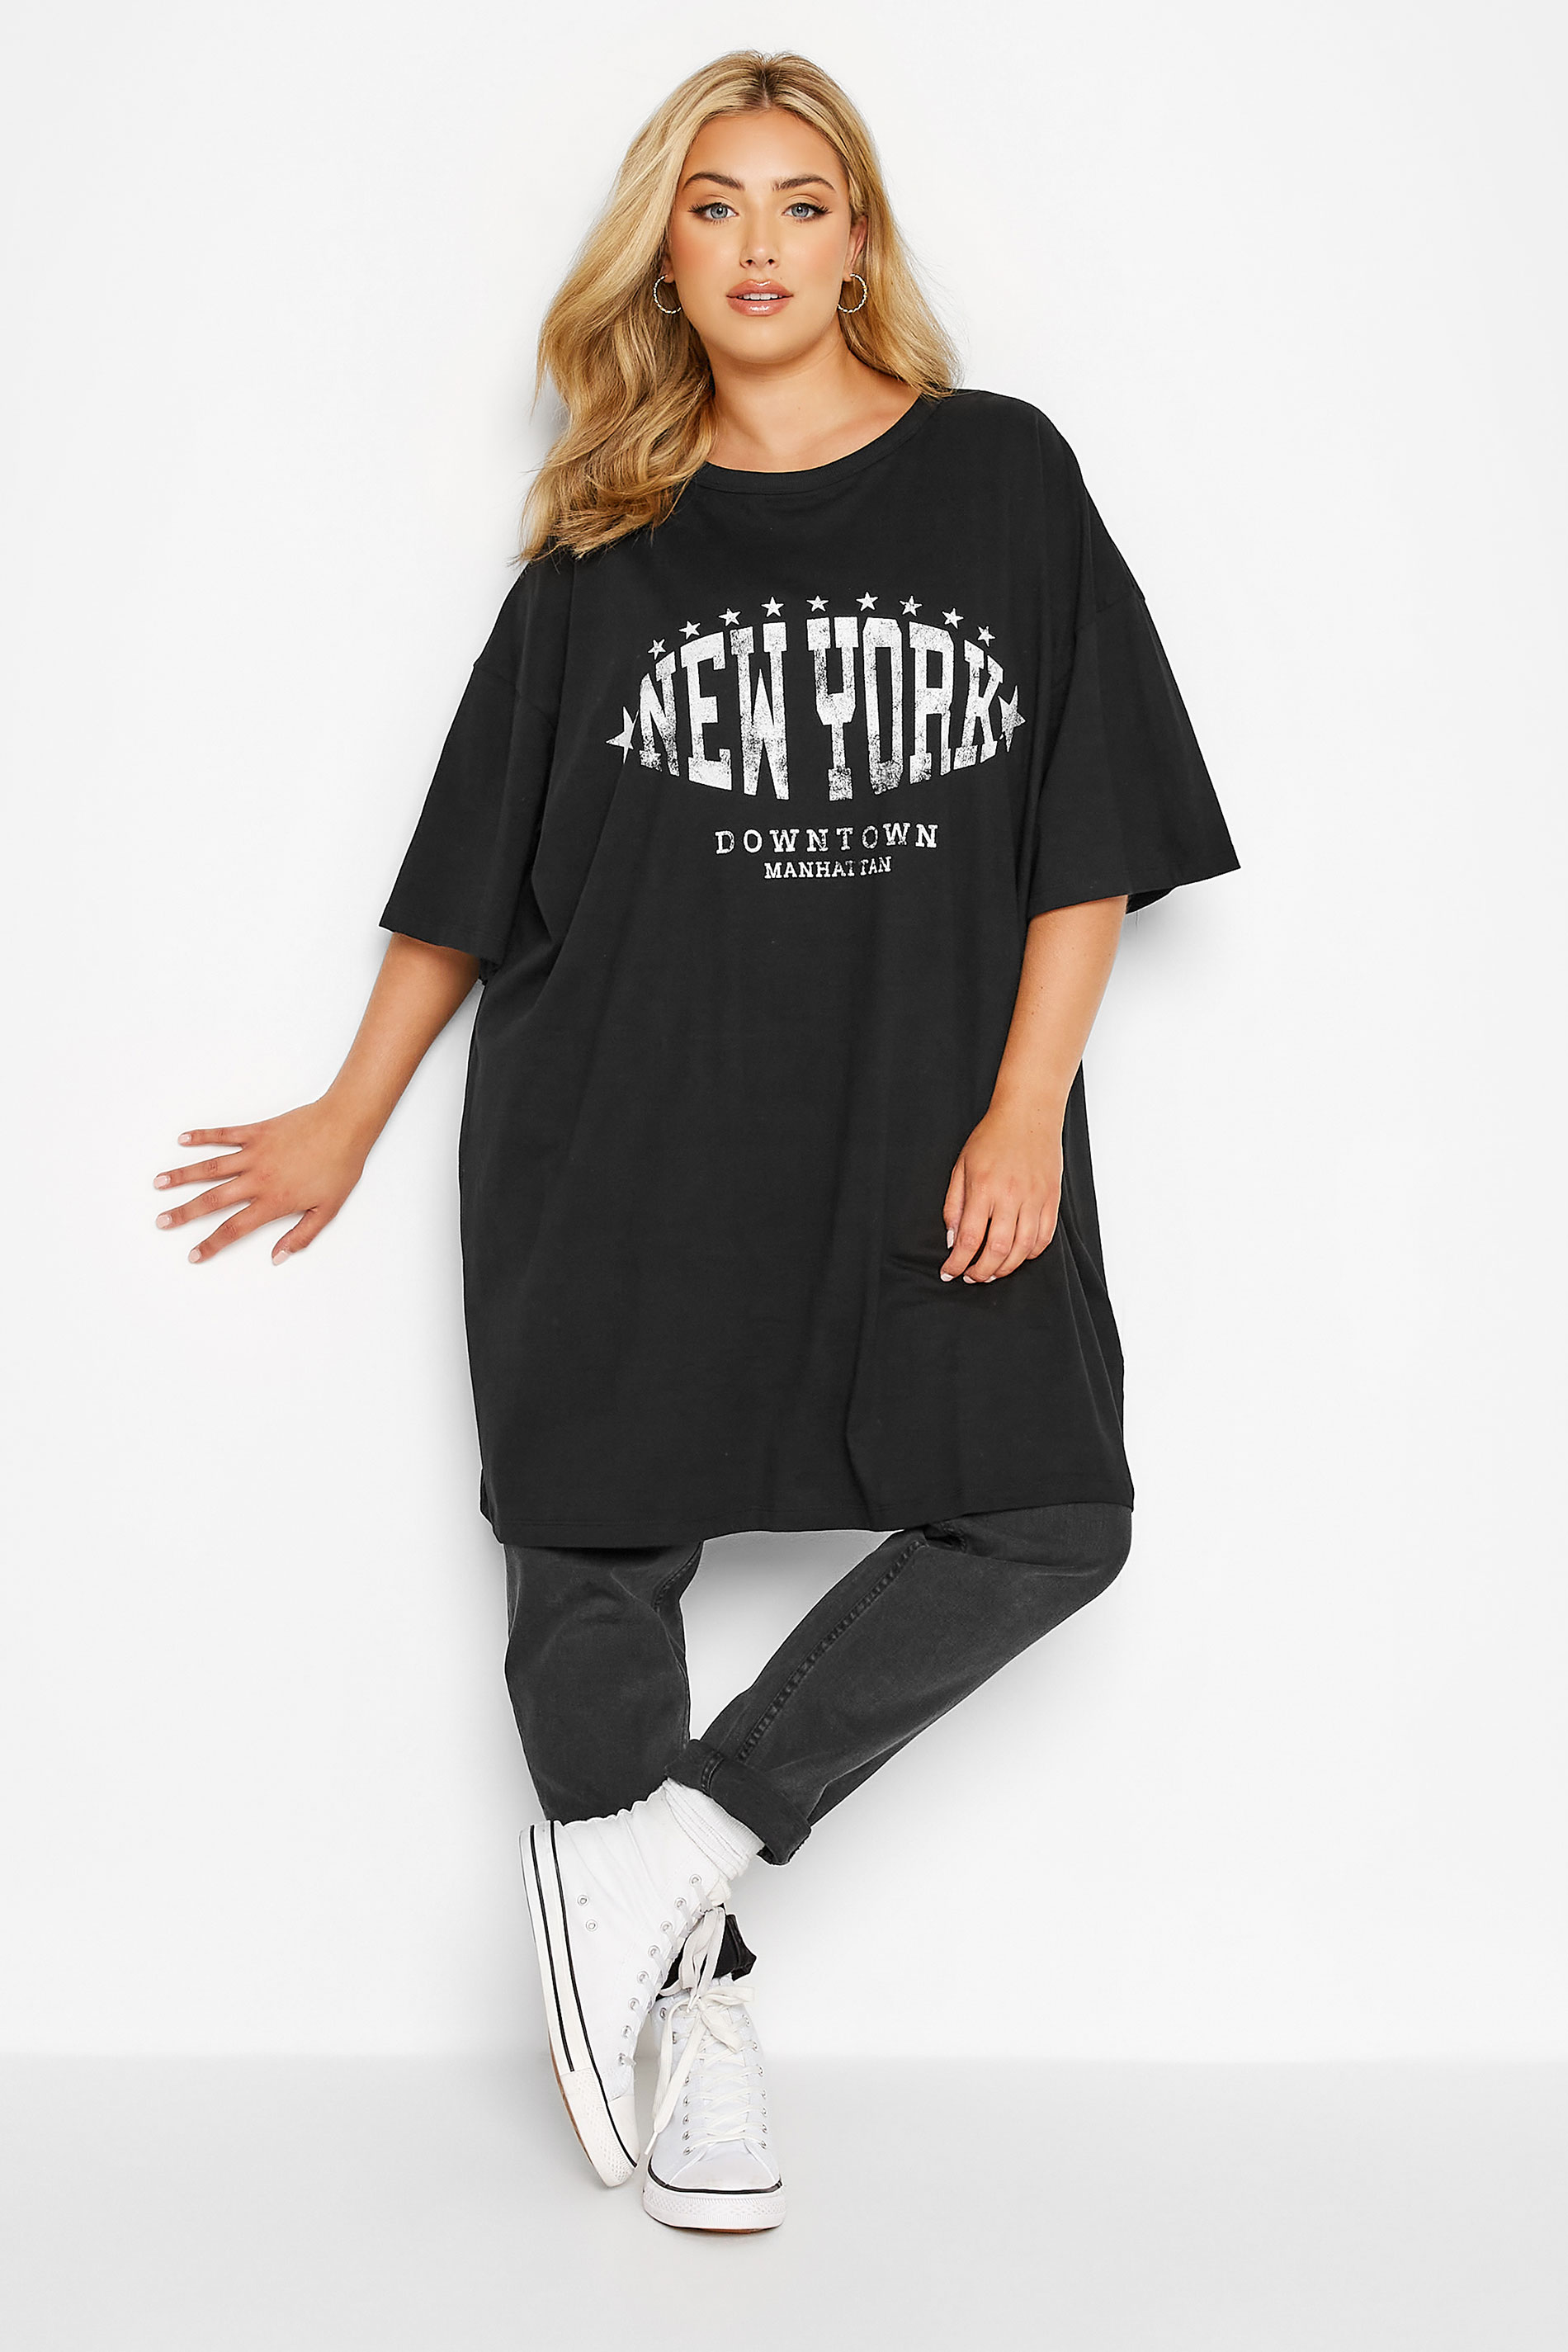 Plus Size Black 'New York' Oversized Tunic T-Shirt Dress | Yours Clothing 1